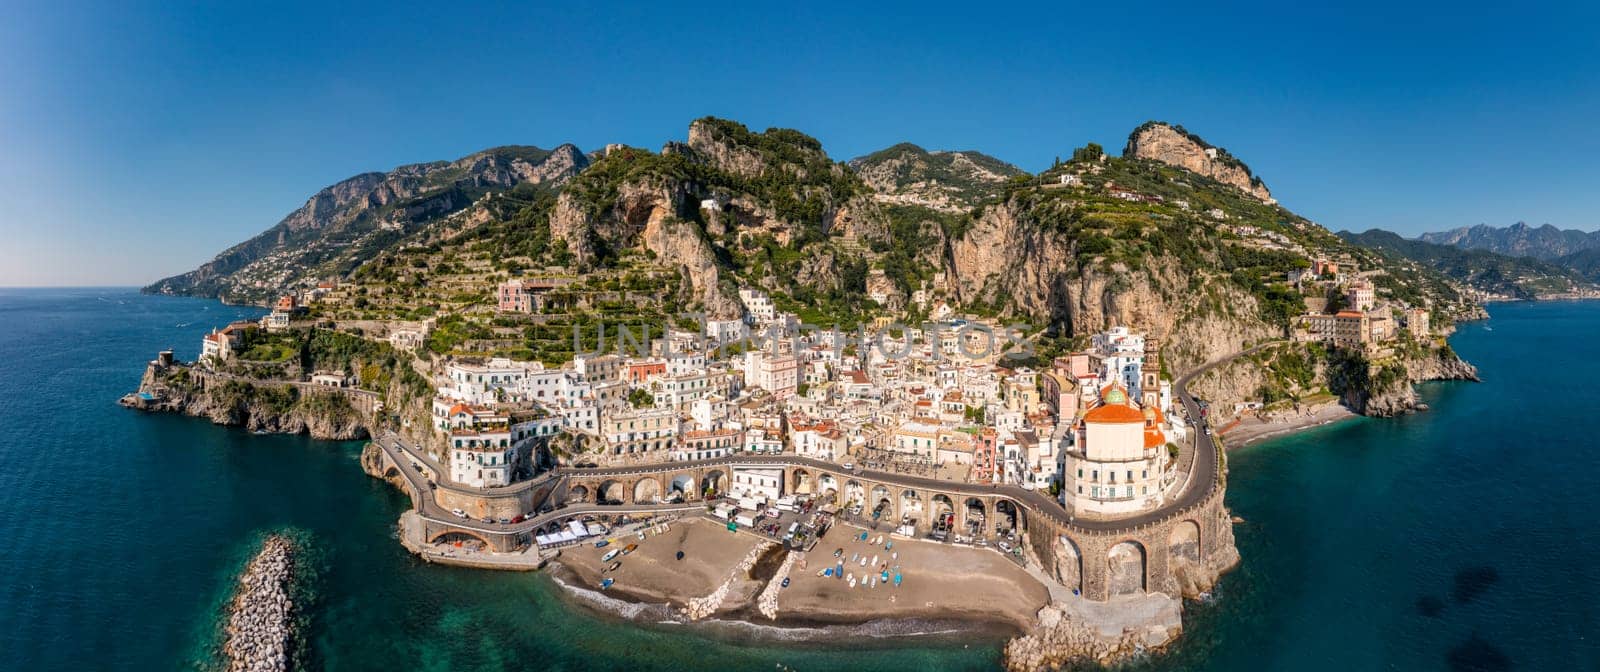 Aerial view of Atrani famous coastal village located on Amalfi Coast, Italy. Small town Atrani on Amalfi Coast in province of Salerno, Campania region, Italy. Atrani town on Amalfi coast, Italy.